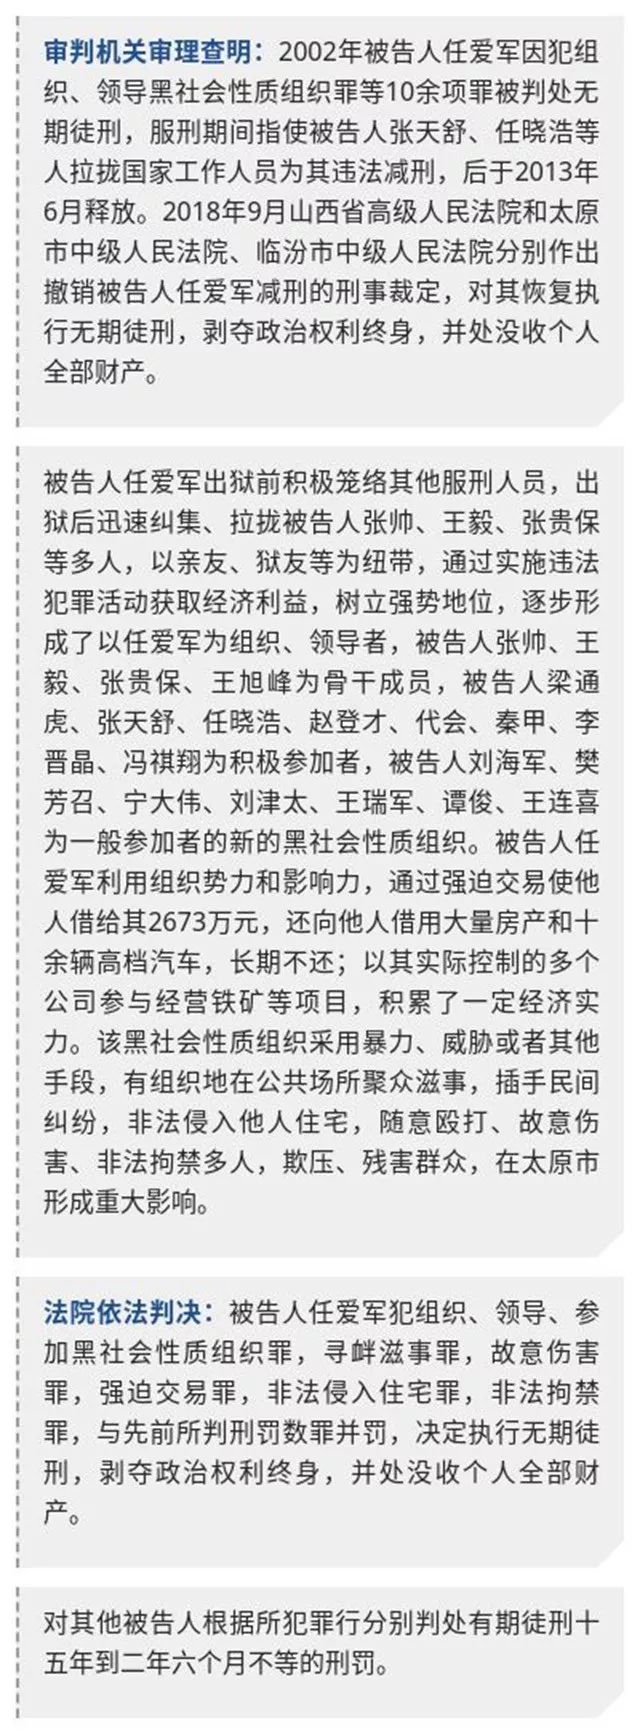 2019年12月30日上午,山西省太原市中级人民法院依法对被告人任爱军等